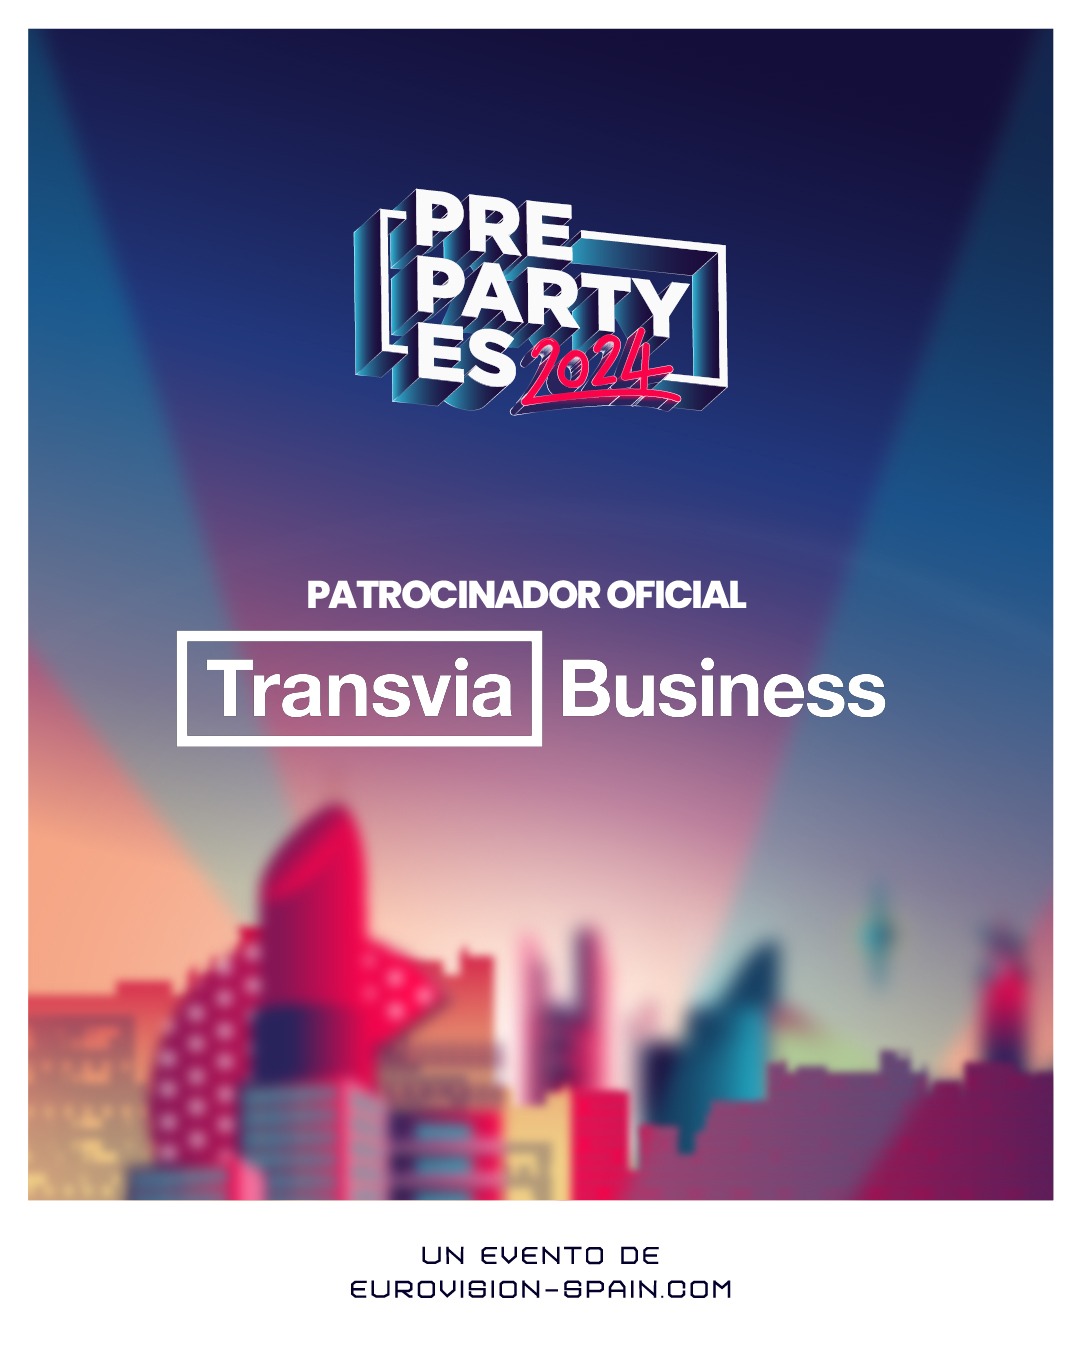 ¡Transvia Business patrocina la #PrePartyES!